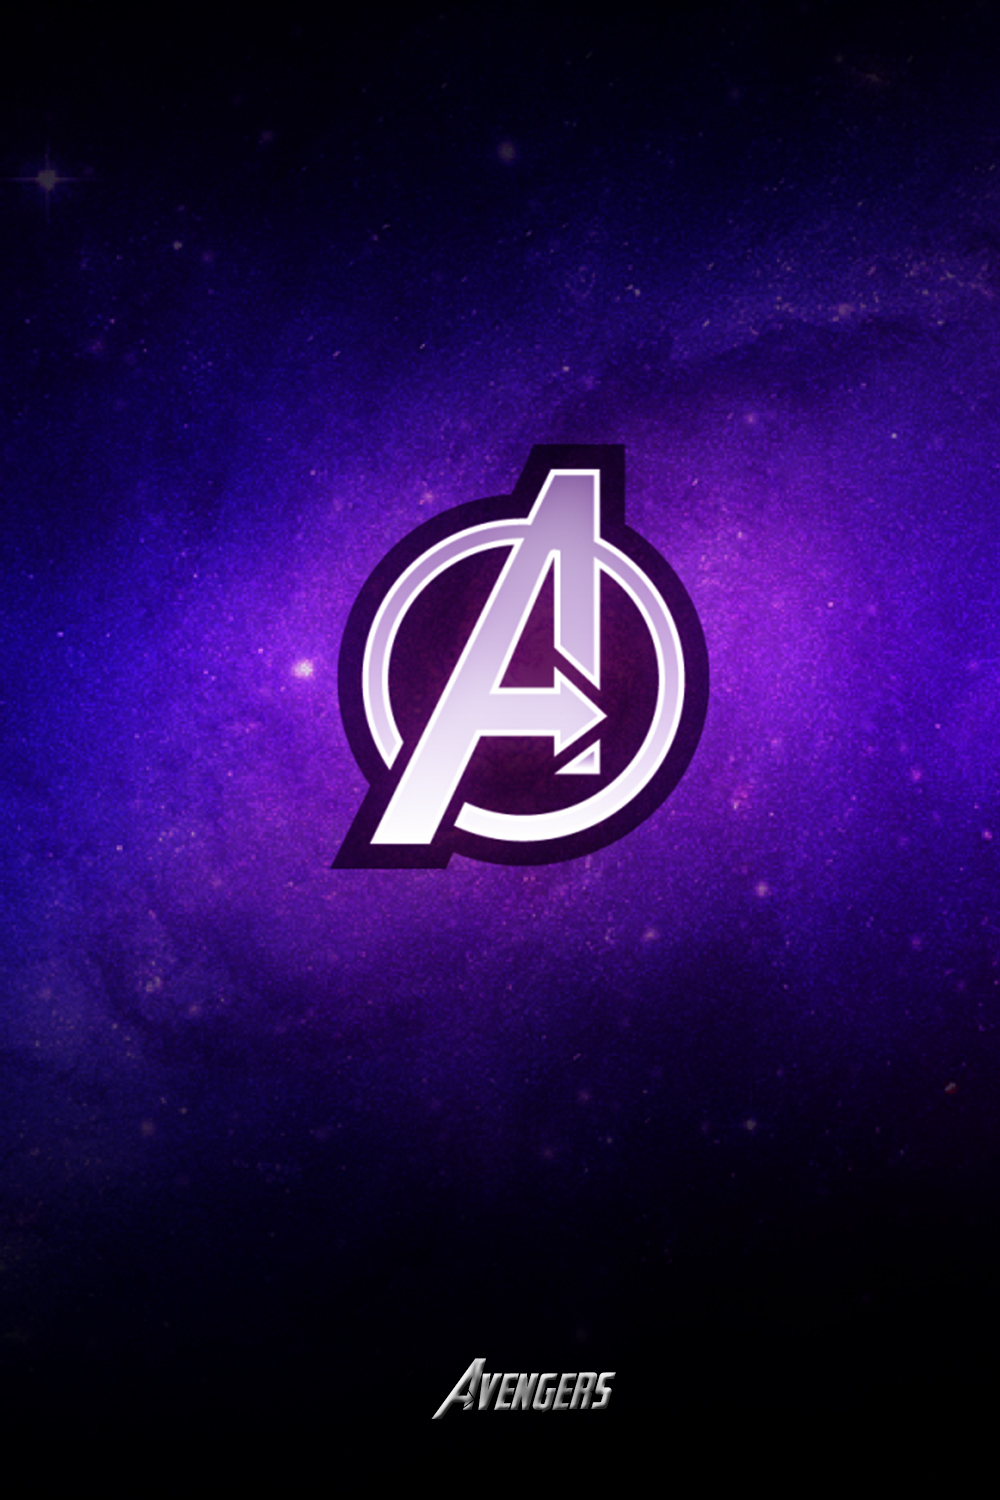 avengers logo Wallpaper iphone. Avengers wallpaper, iPhone wallpaper image, Avengers logo